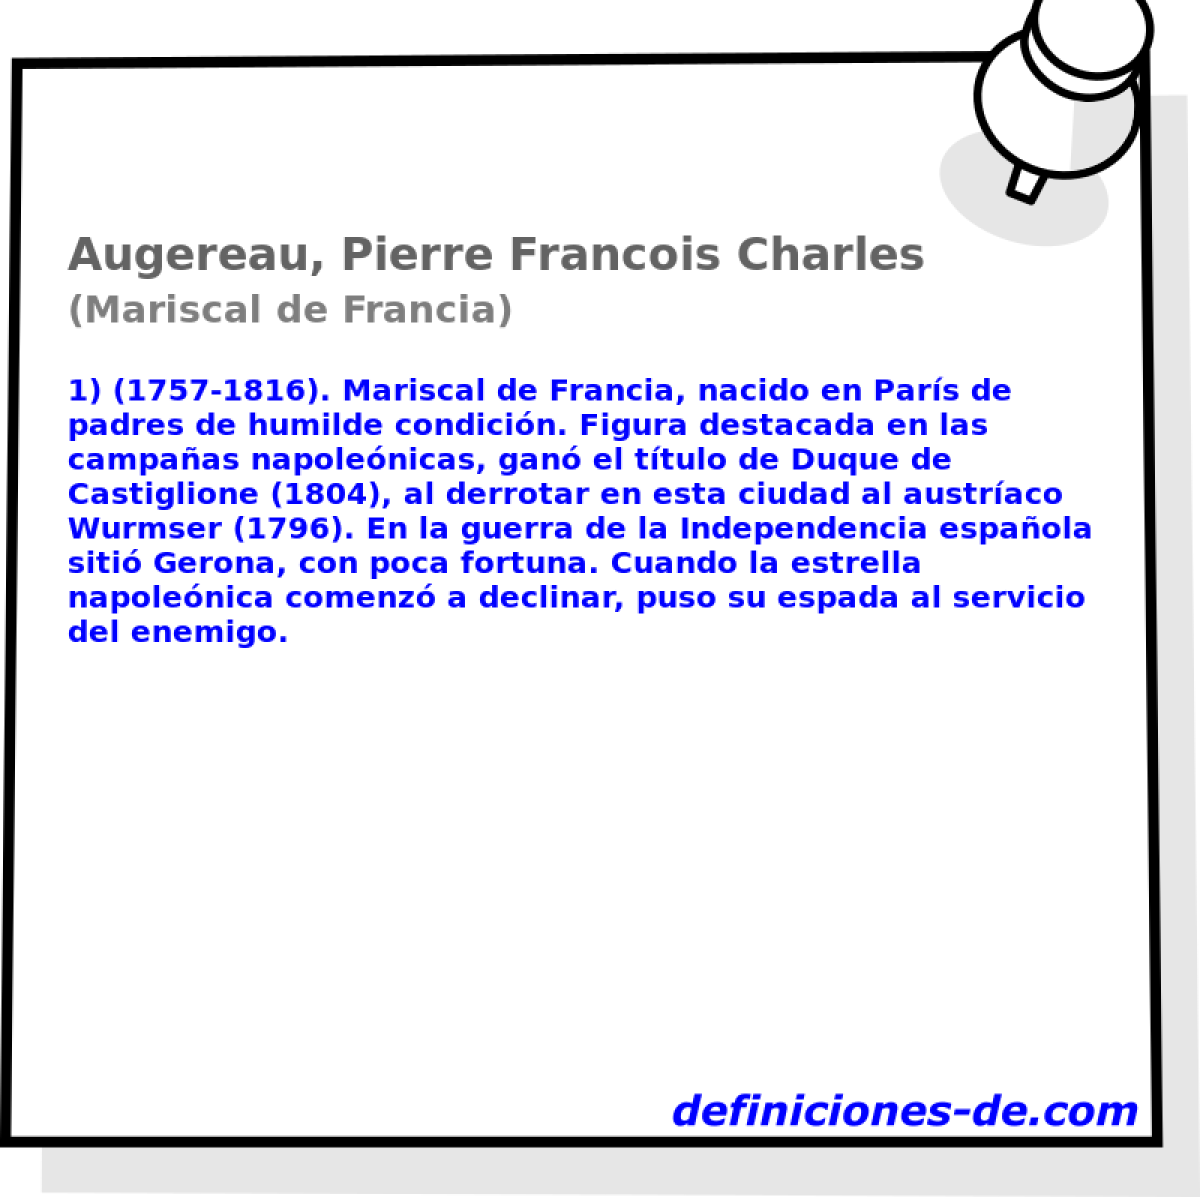 Augereau, Pierre Francois Charles (Mariscal de Francia)